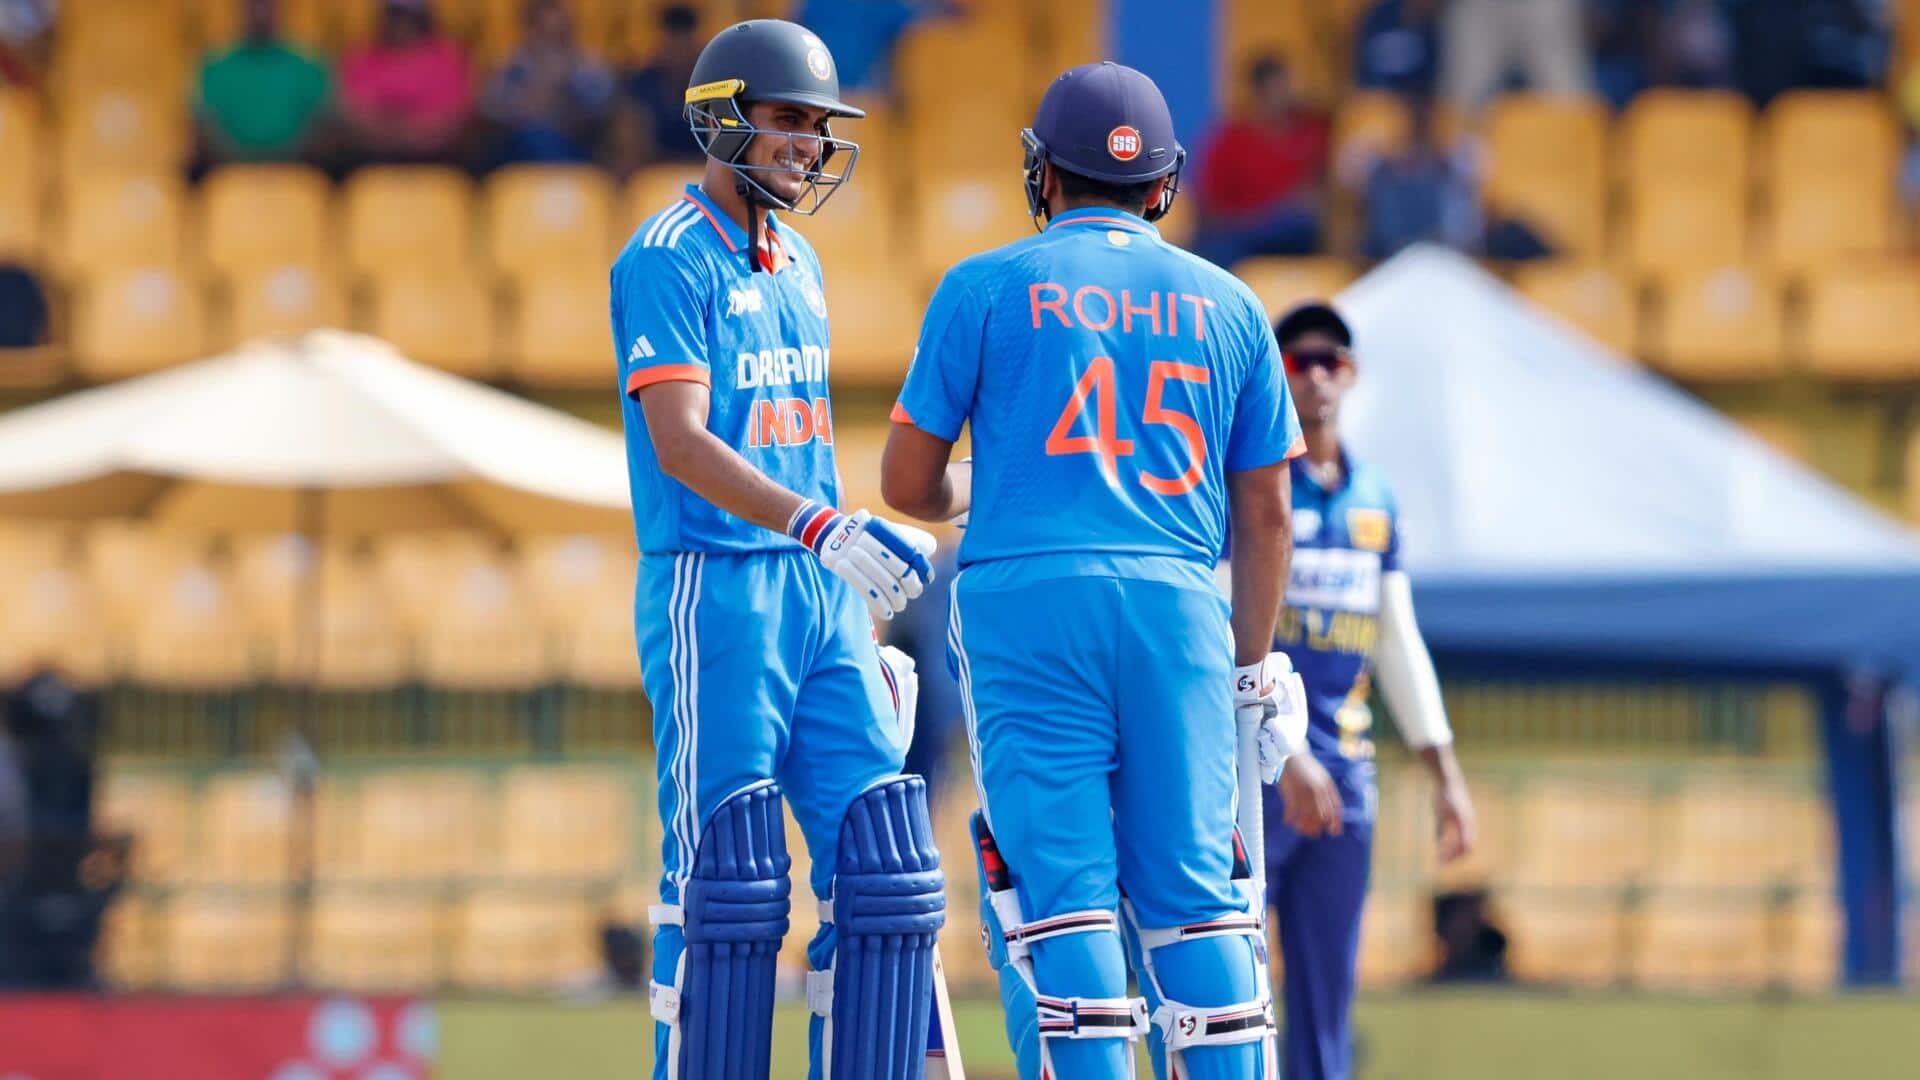 ICC वनडे रैंकिंग: शुभमन गिल दूसरे स्थान पर पहुंचे, इन खिलाड़ियों को हुआ फायदा 